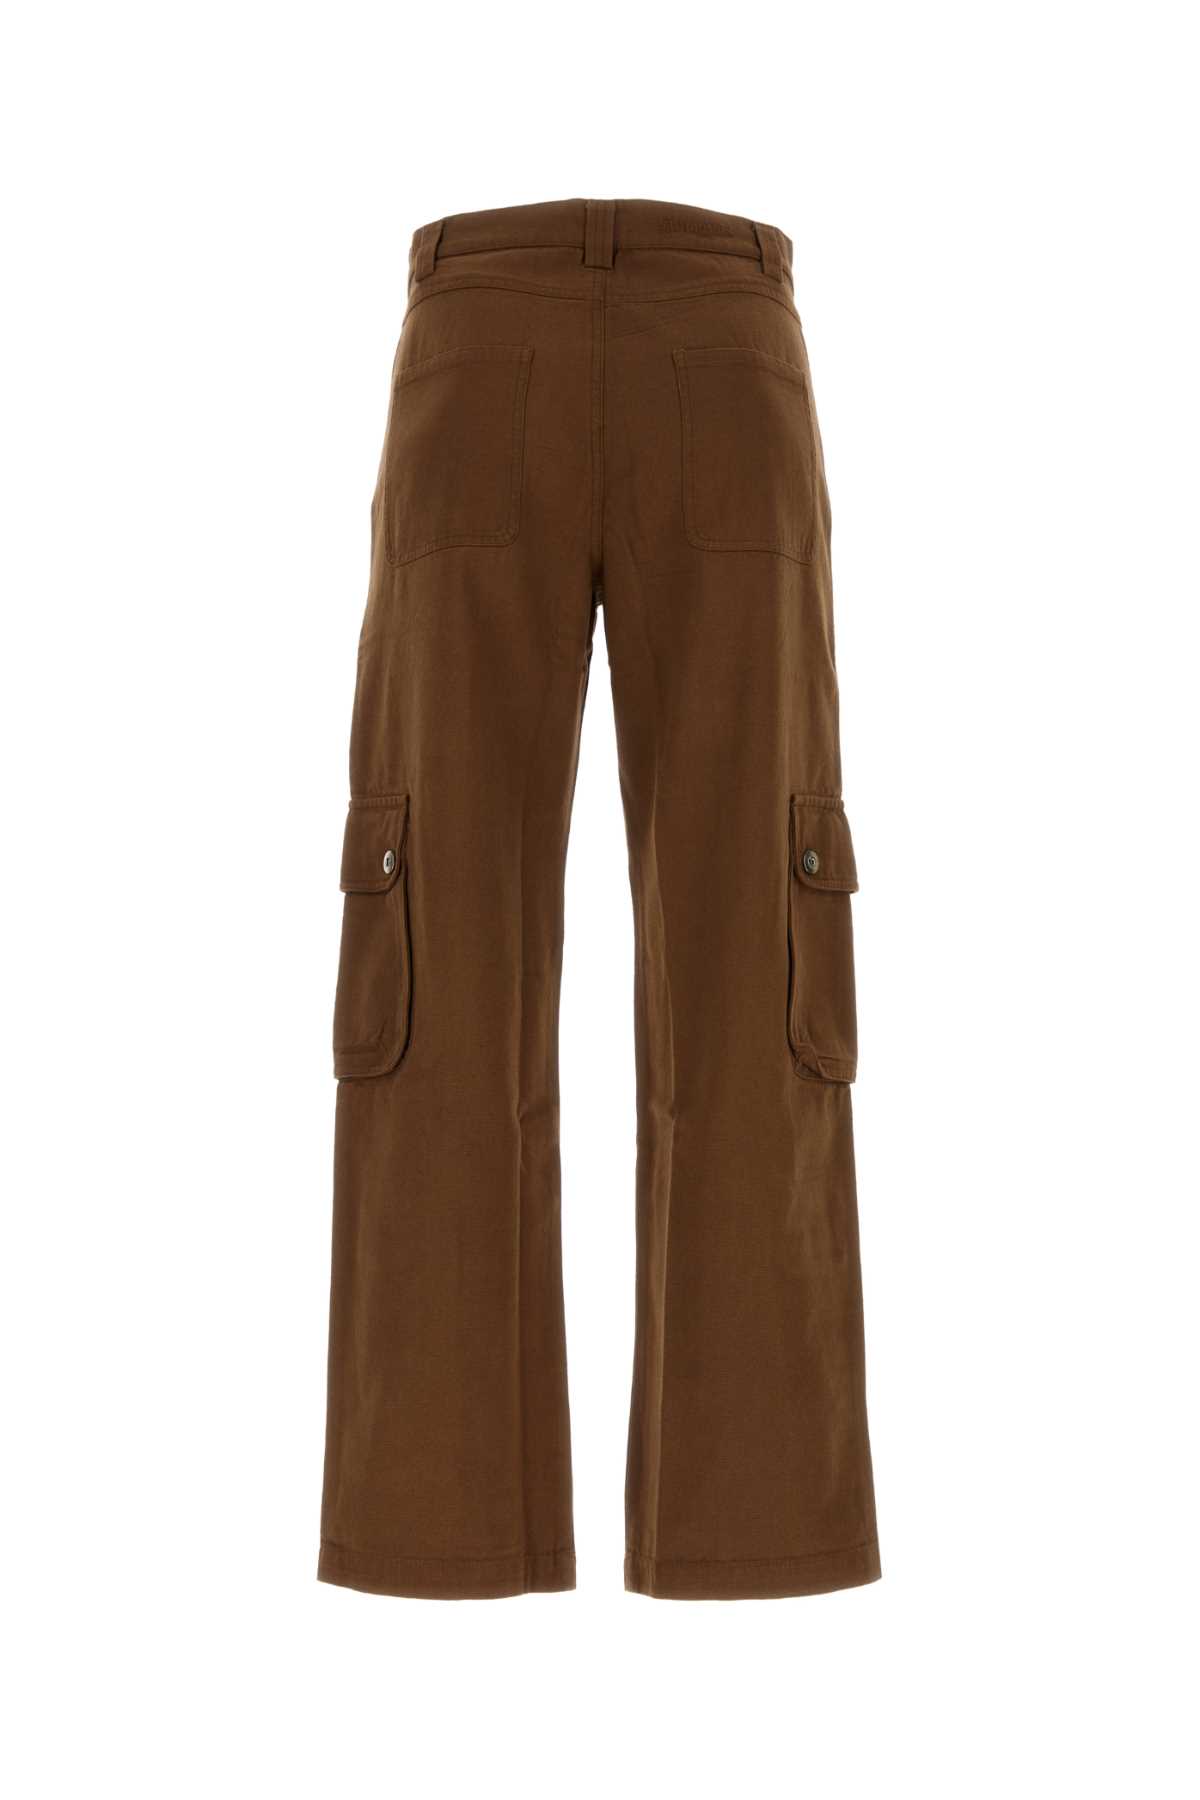 Shop Gimaguas Brown Cotton Morris Cargo Pants